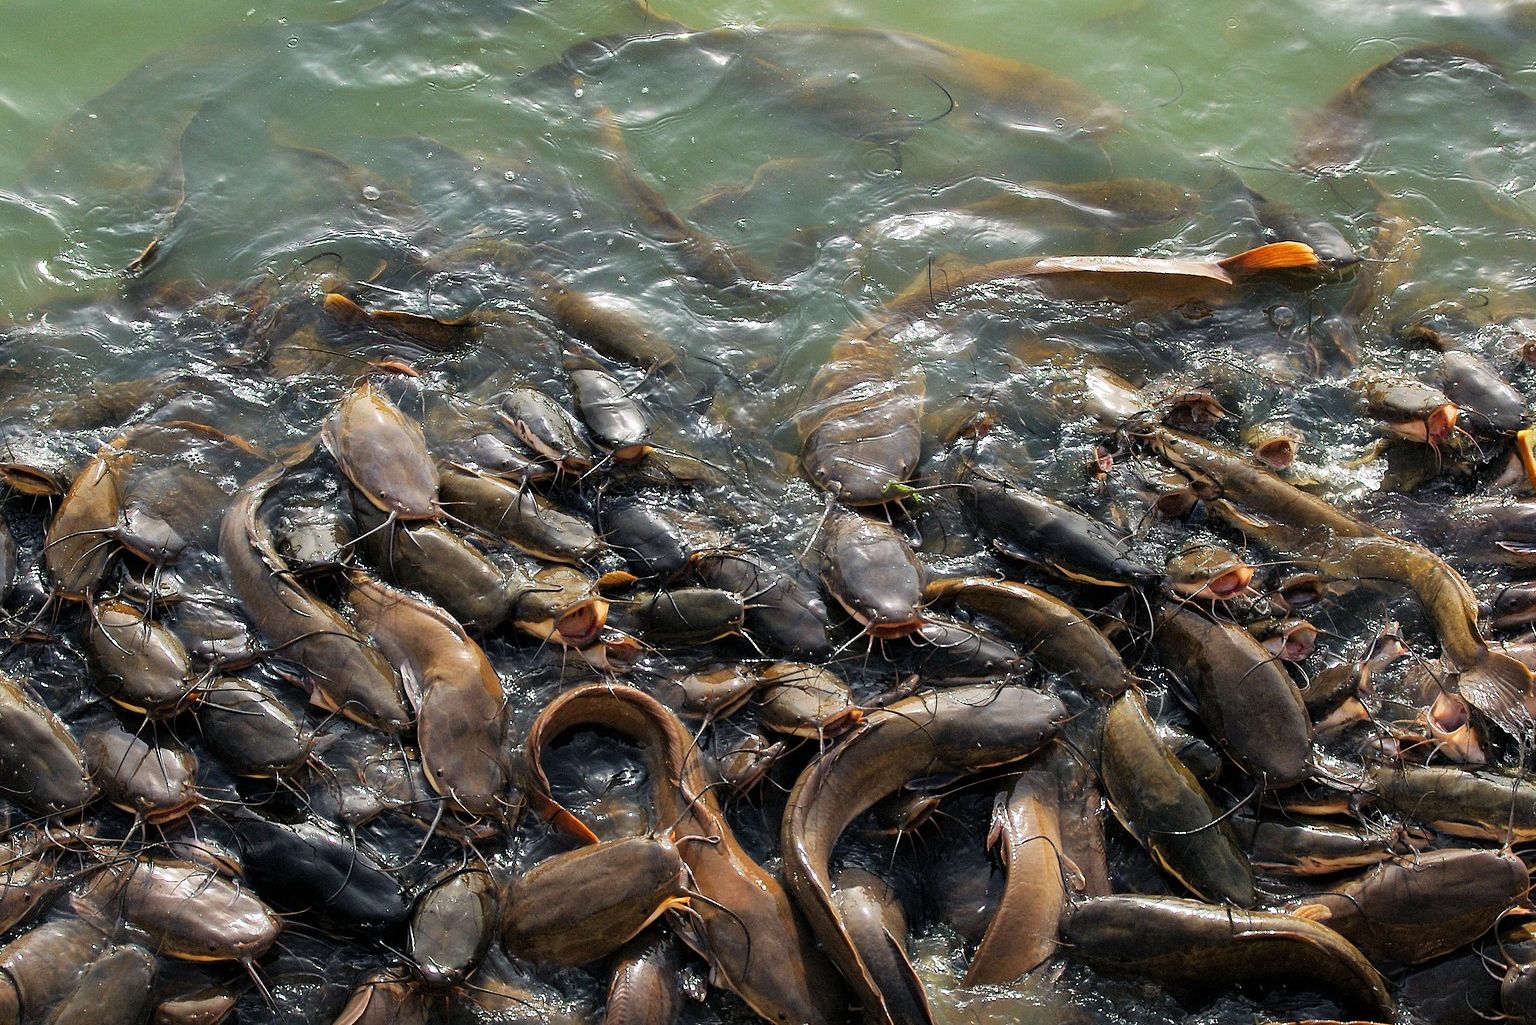 [KLARIFIKASI] Foto Hujan Ikan Terjadi di Jalanan China, Bukan Iran